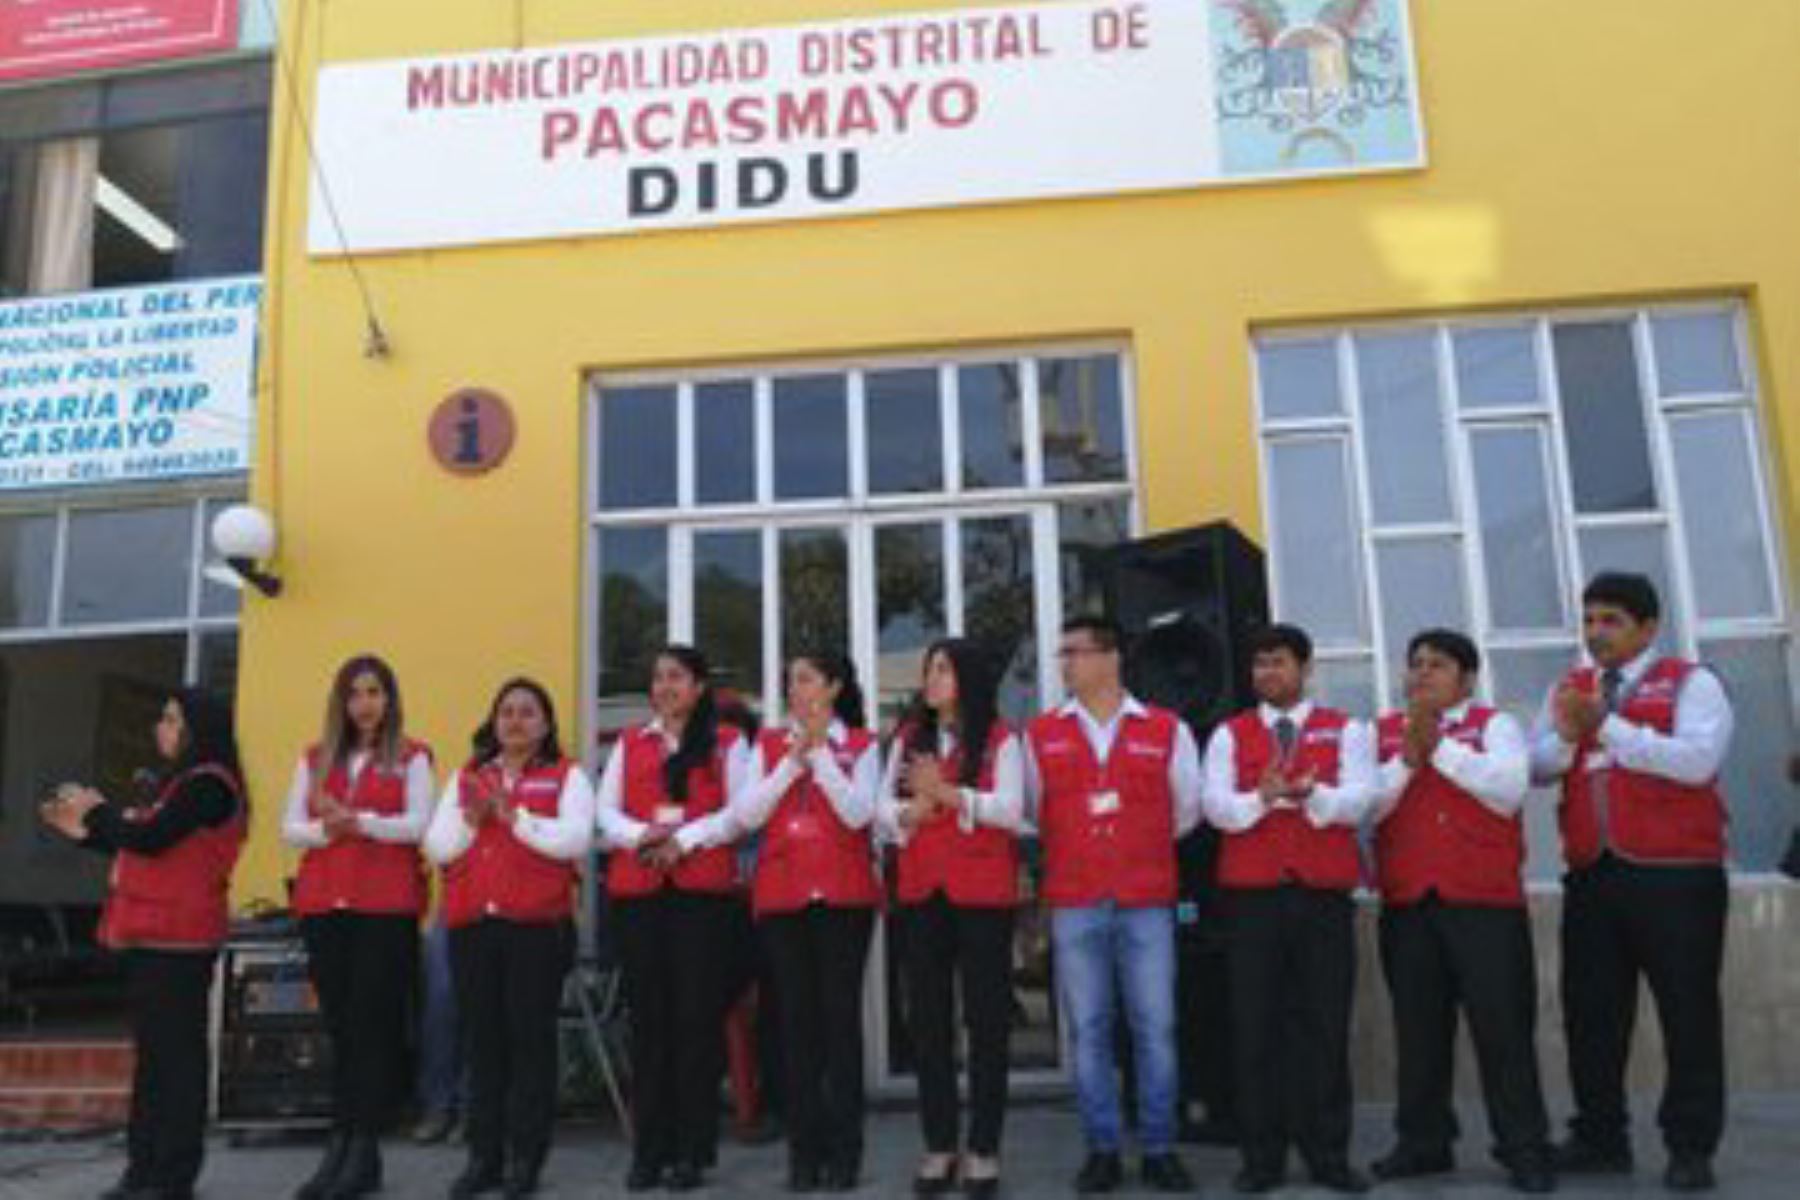 La ministra de la Mujer y Poblaciones Vulnerables, Gloria Montenegro, inauguró el nuevo Centro de Emergencia Mujer en comisaría de Pacasmayo, que permitirá ofrecer un servicio especializado y multidisciplinario las 24 horas, los 365 días, en esta parte de la región La Libertad.